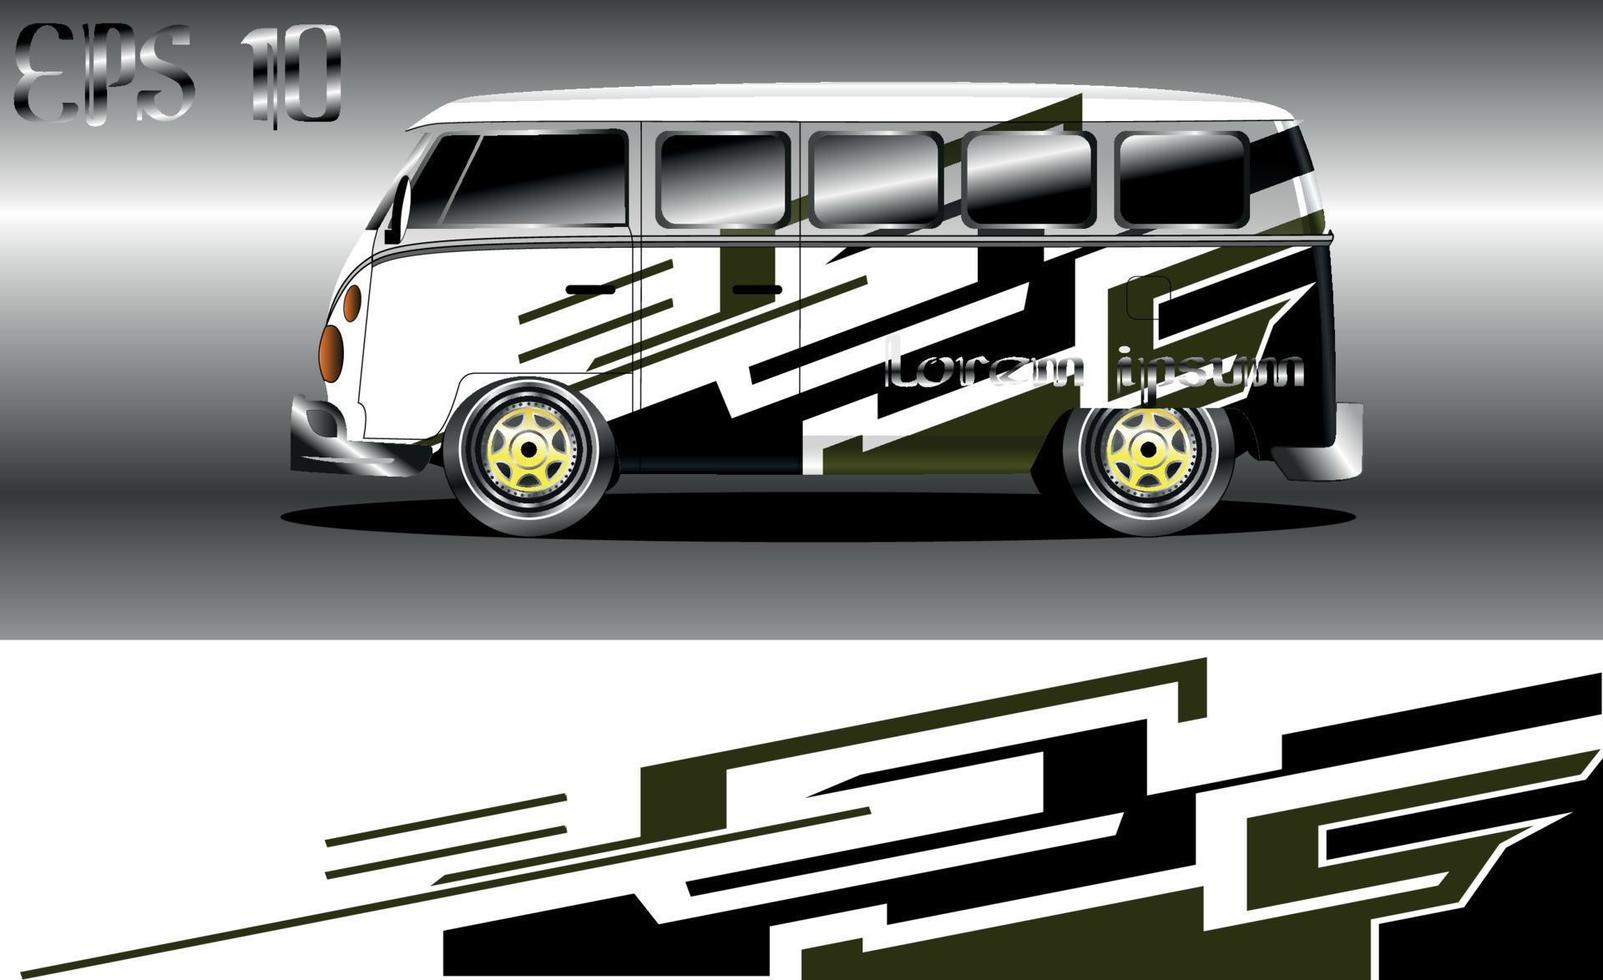 Abstrakter Hintergrund Car Wrap für Vans, Rallye- und Rennwagen vektor